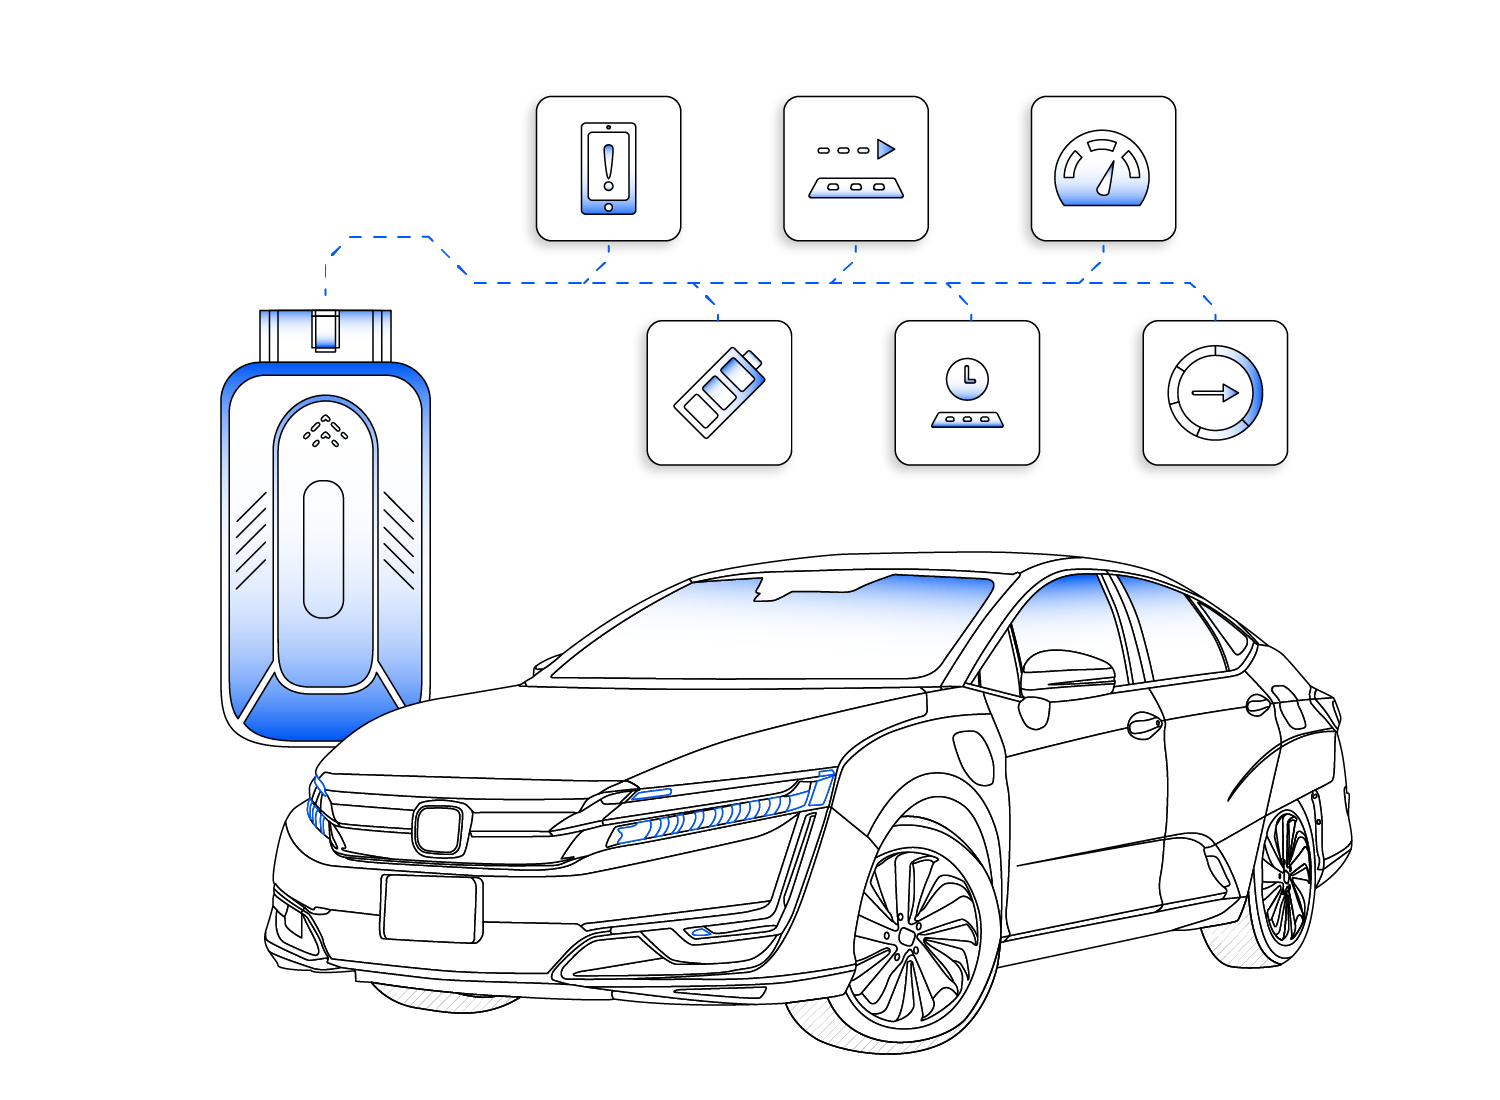 AutoPi and Honda Clarity